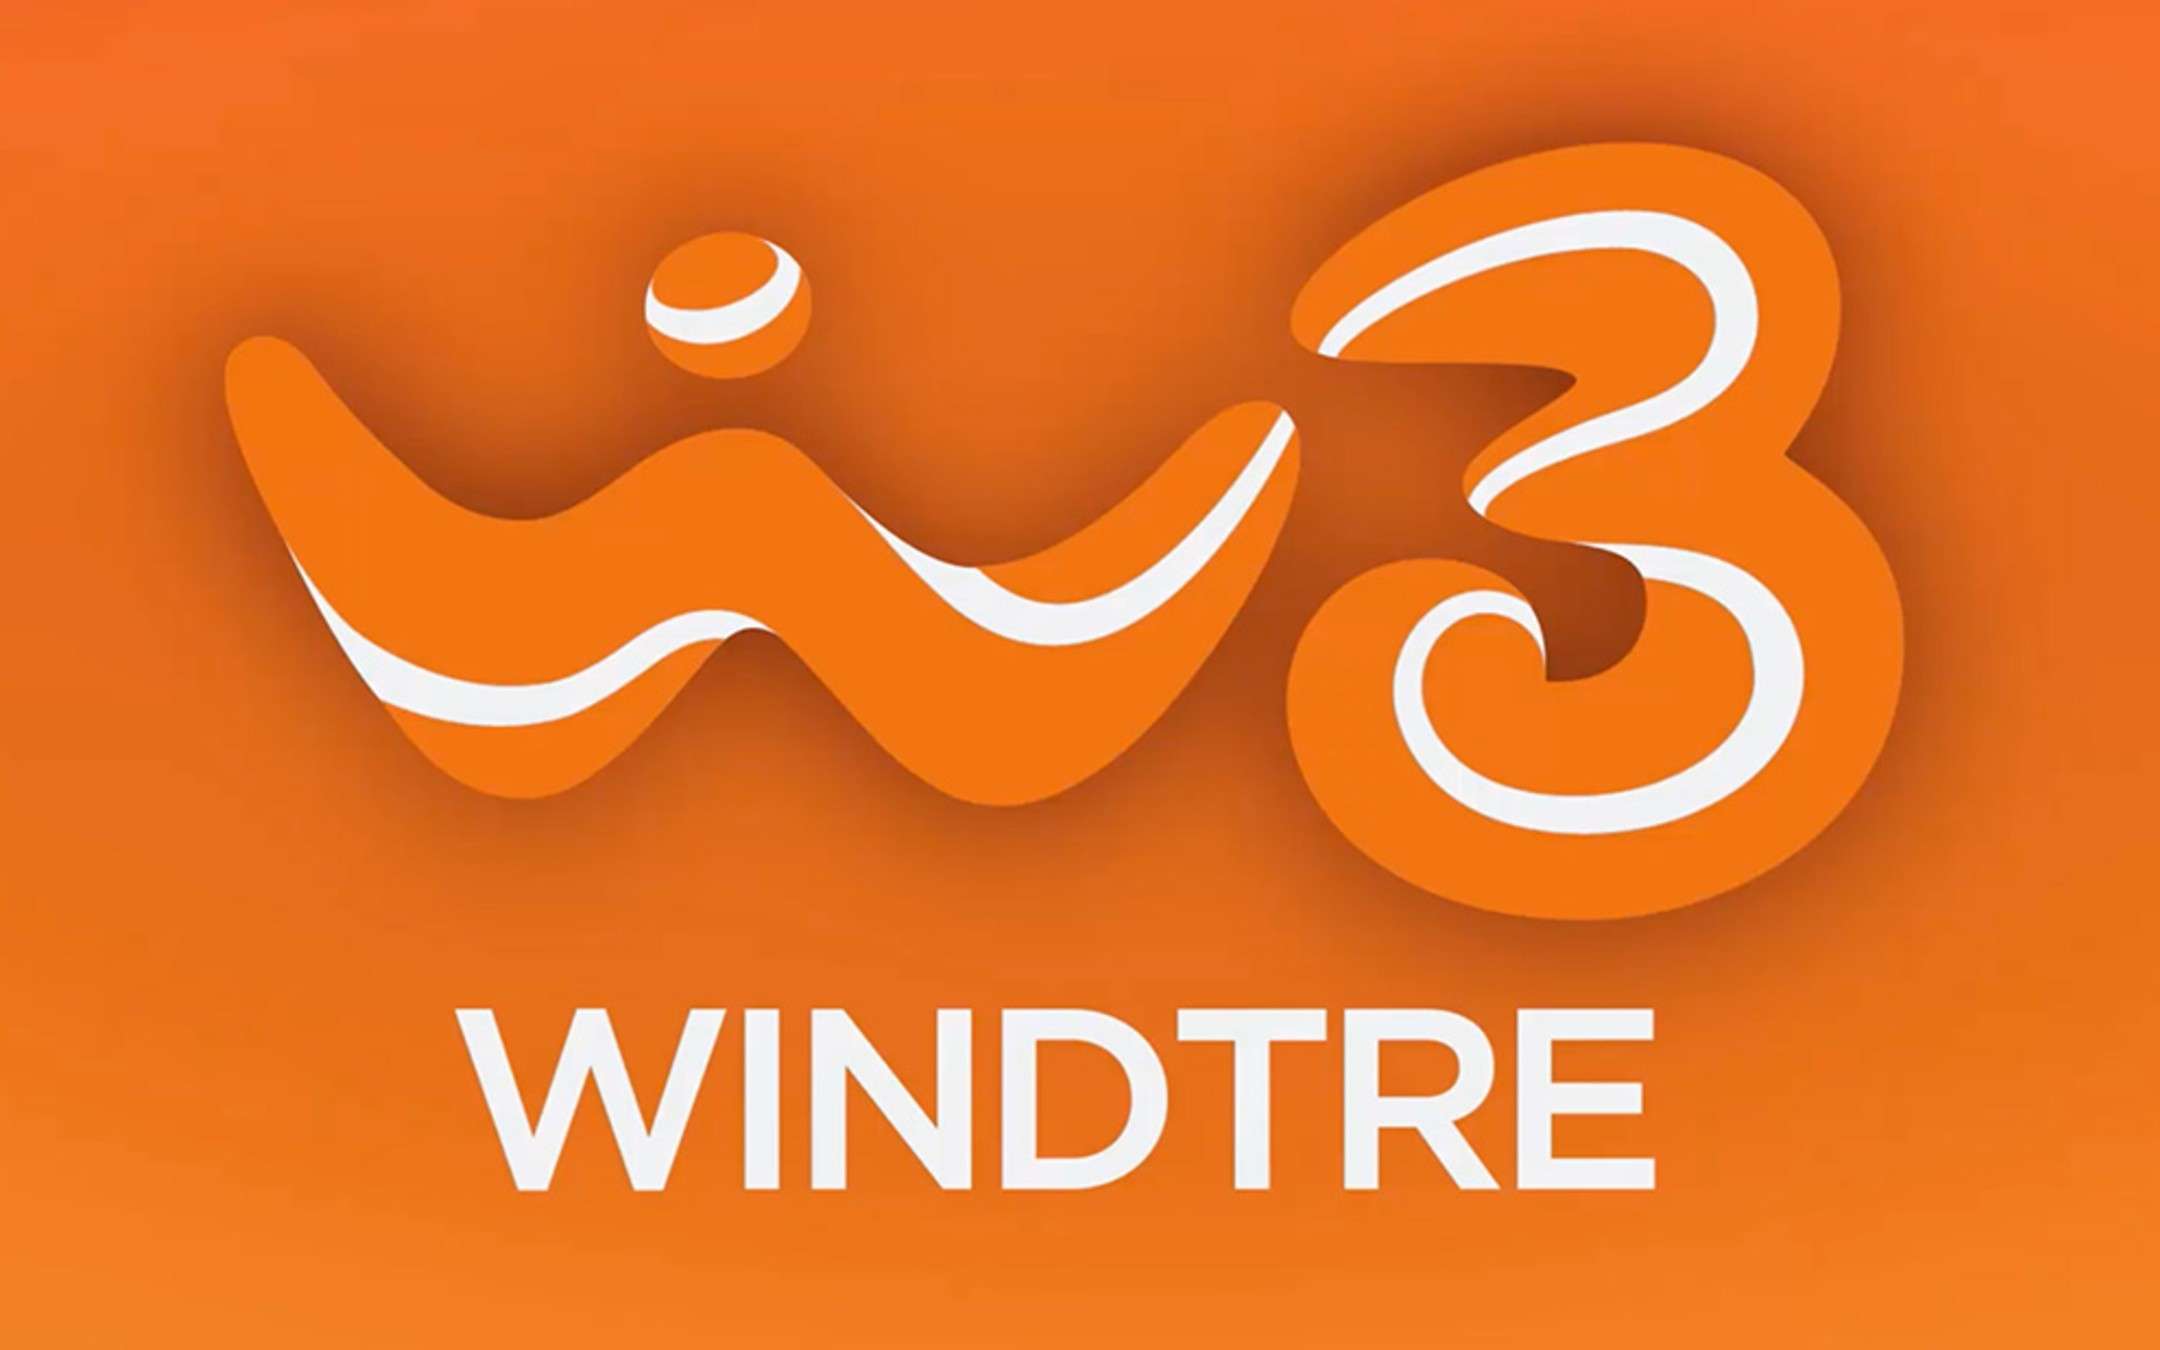 WindTre: Summer 150 Giga in sconto dal 1 settembre